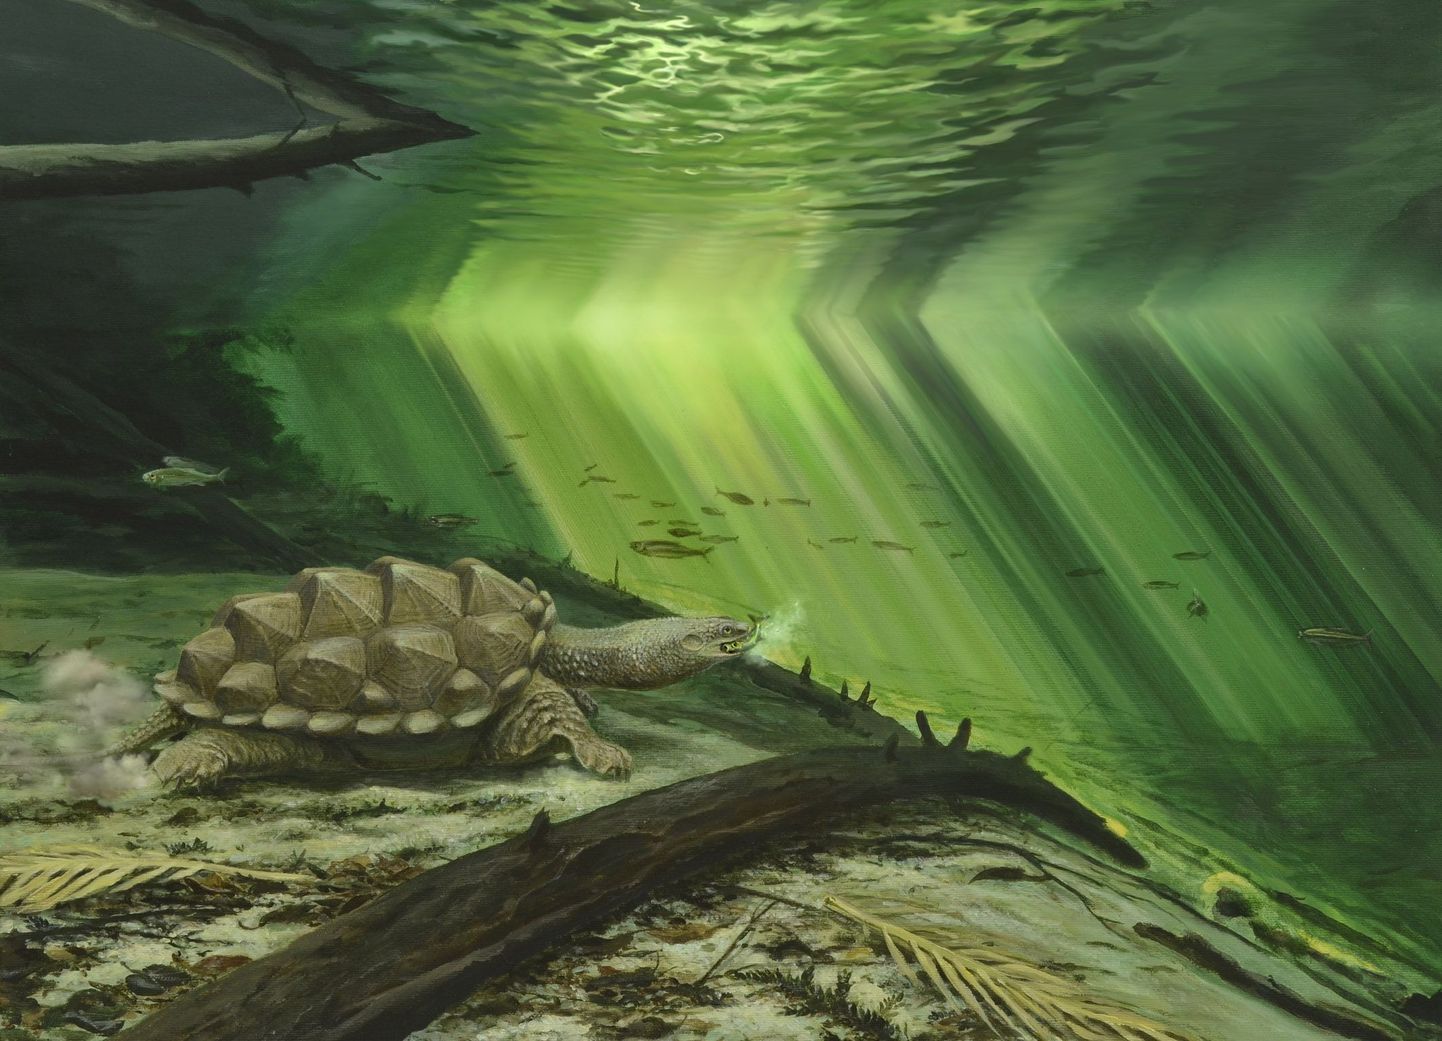 Kunstniku kujutis Plathycelys oberdorferist ja tema keskkonnast. Pildil heidab kilpkonn oma pead kiiresti ettepoole, et püüda möödaminevaid kalu.